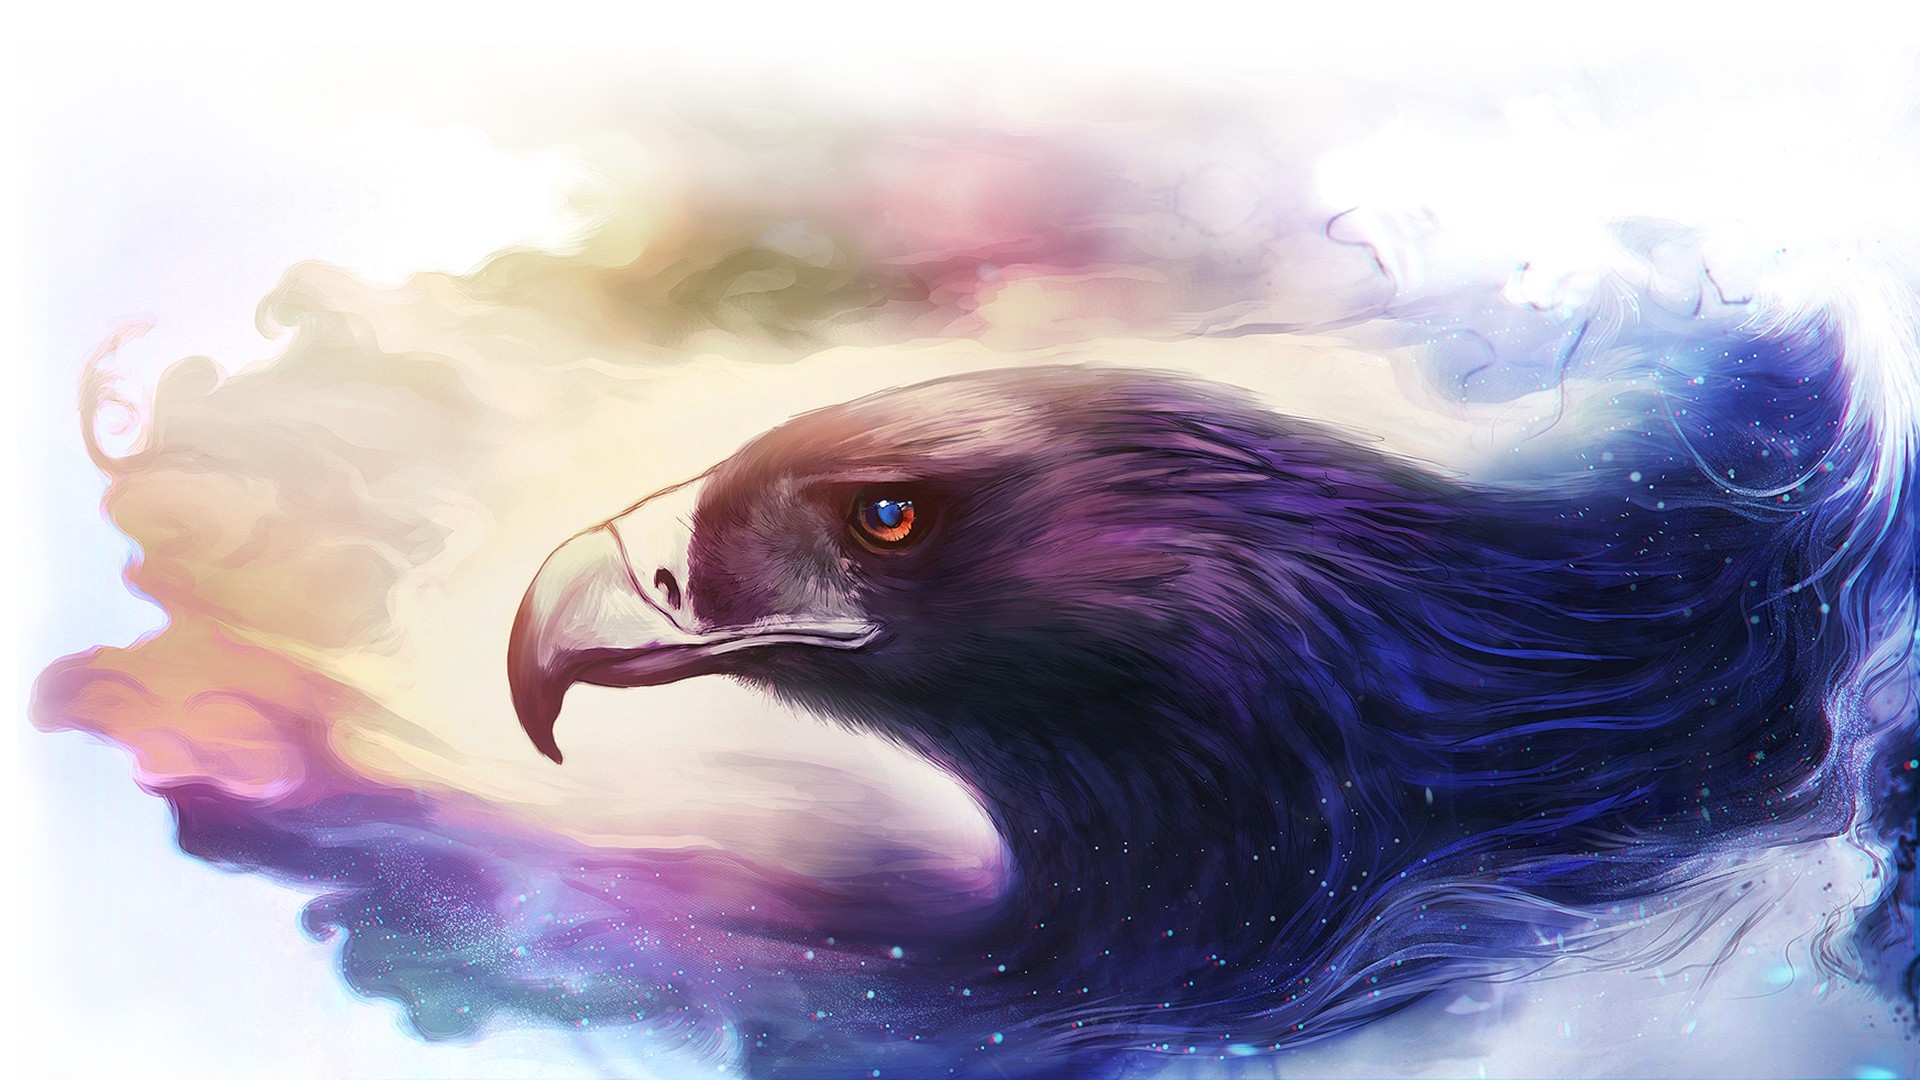 fantasy art eagle artwork animals Wallpaper HD / Desktop and Mobile Background